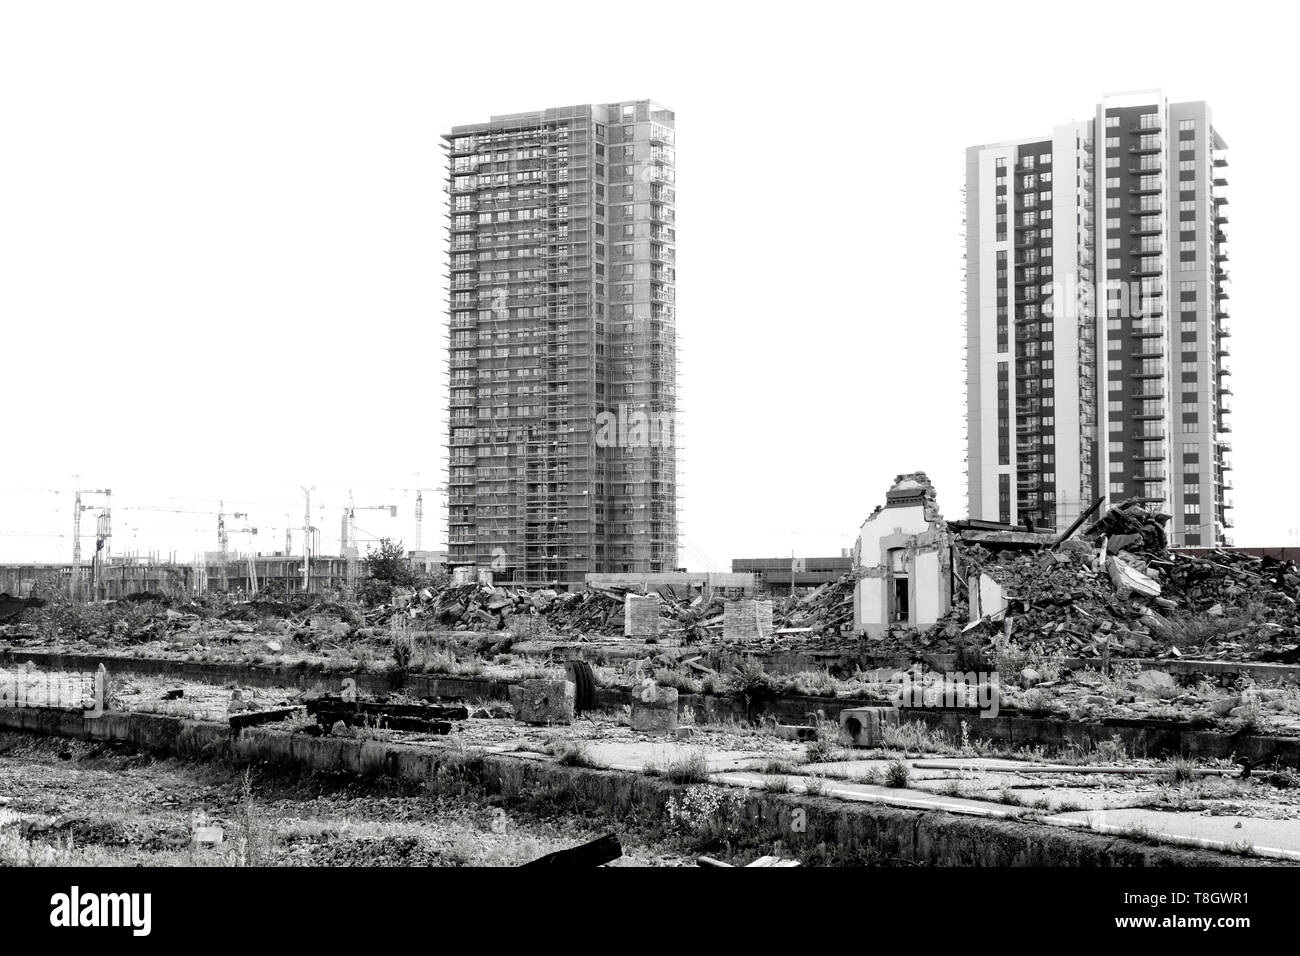 A Belgrado, in Serbia - 7 Maggio 2019 : il contrasto della demolita casa vecchia e la costruzione del sito con nuovi grattacieli, urbanizzazione cambiamento di Belgrado Waterfro Foto Stock